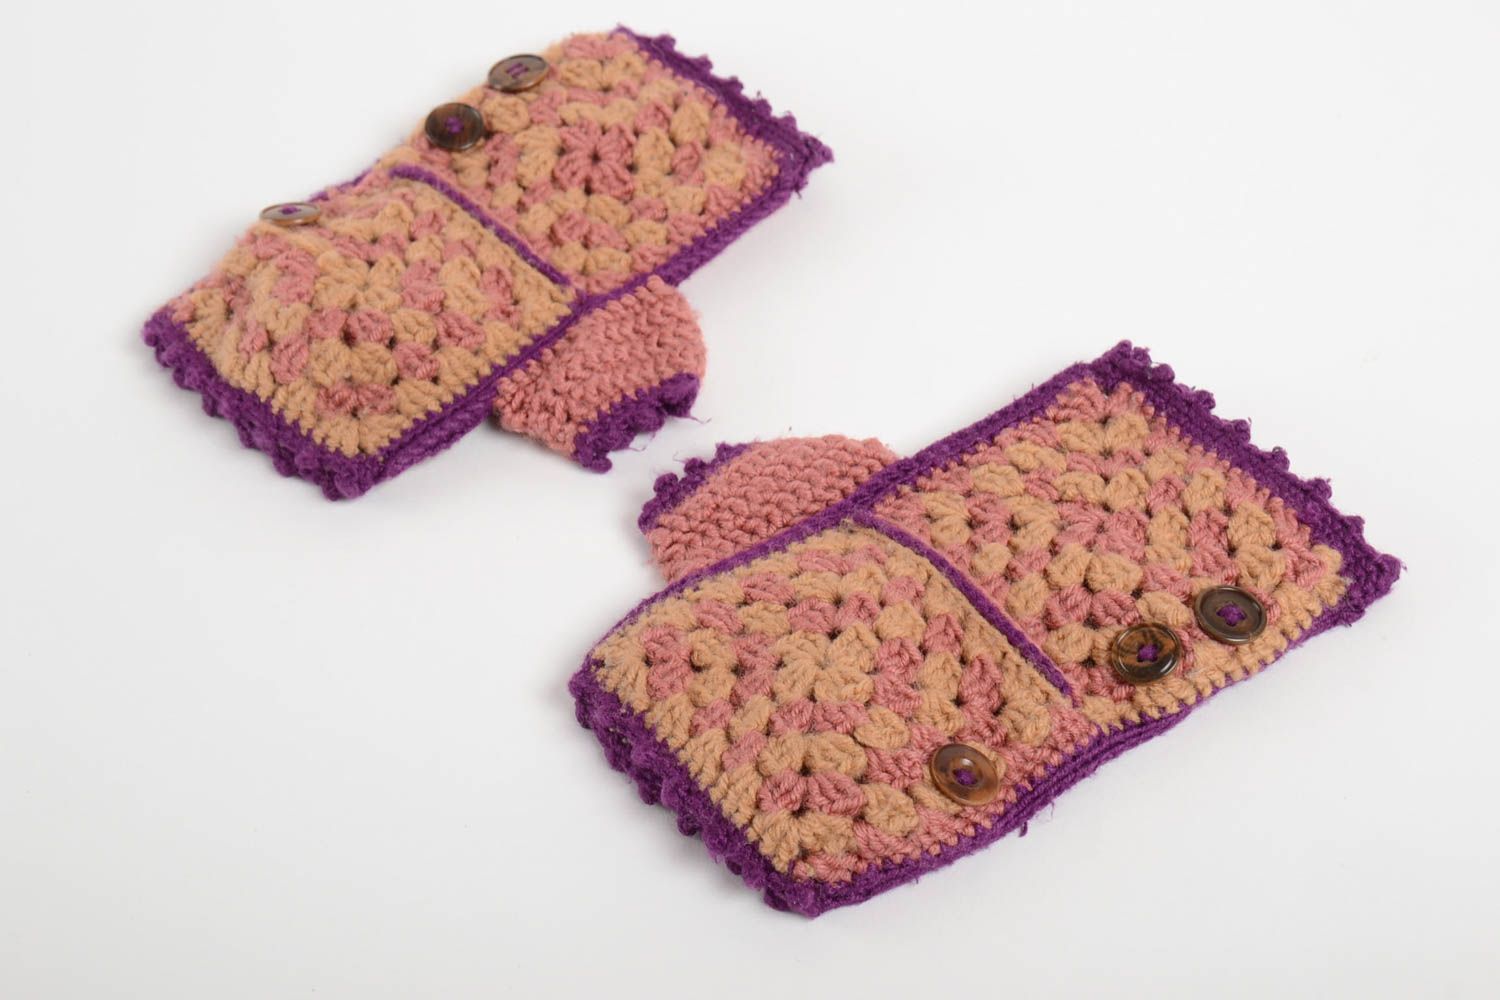 Beautiful handmade crochet mittens crochet ideas winter accessories gift ideas photo 3